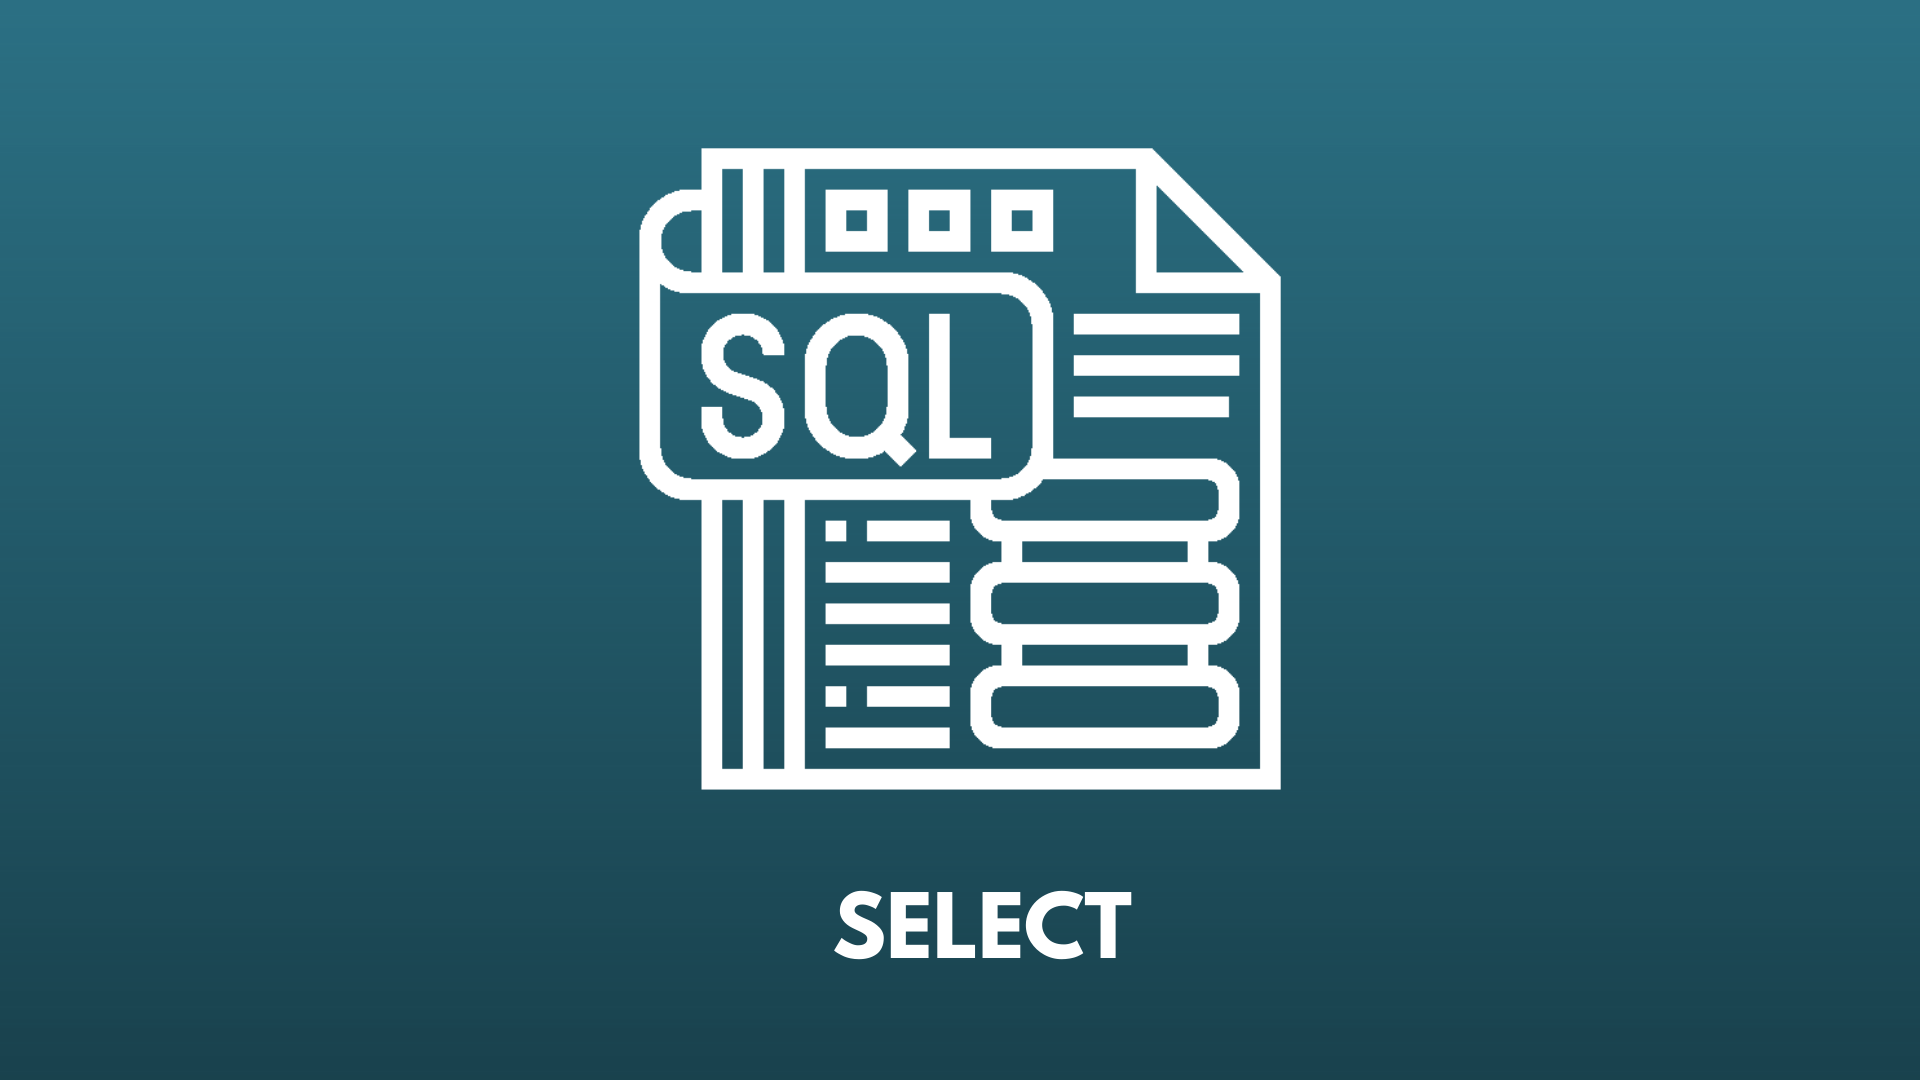 Imagem com fundo azul escuro, com um ícone do SQL e a palavra select destacada em branco.